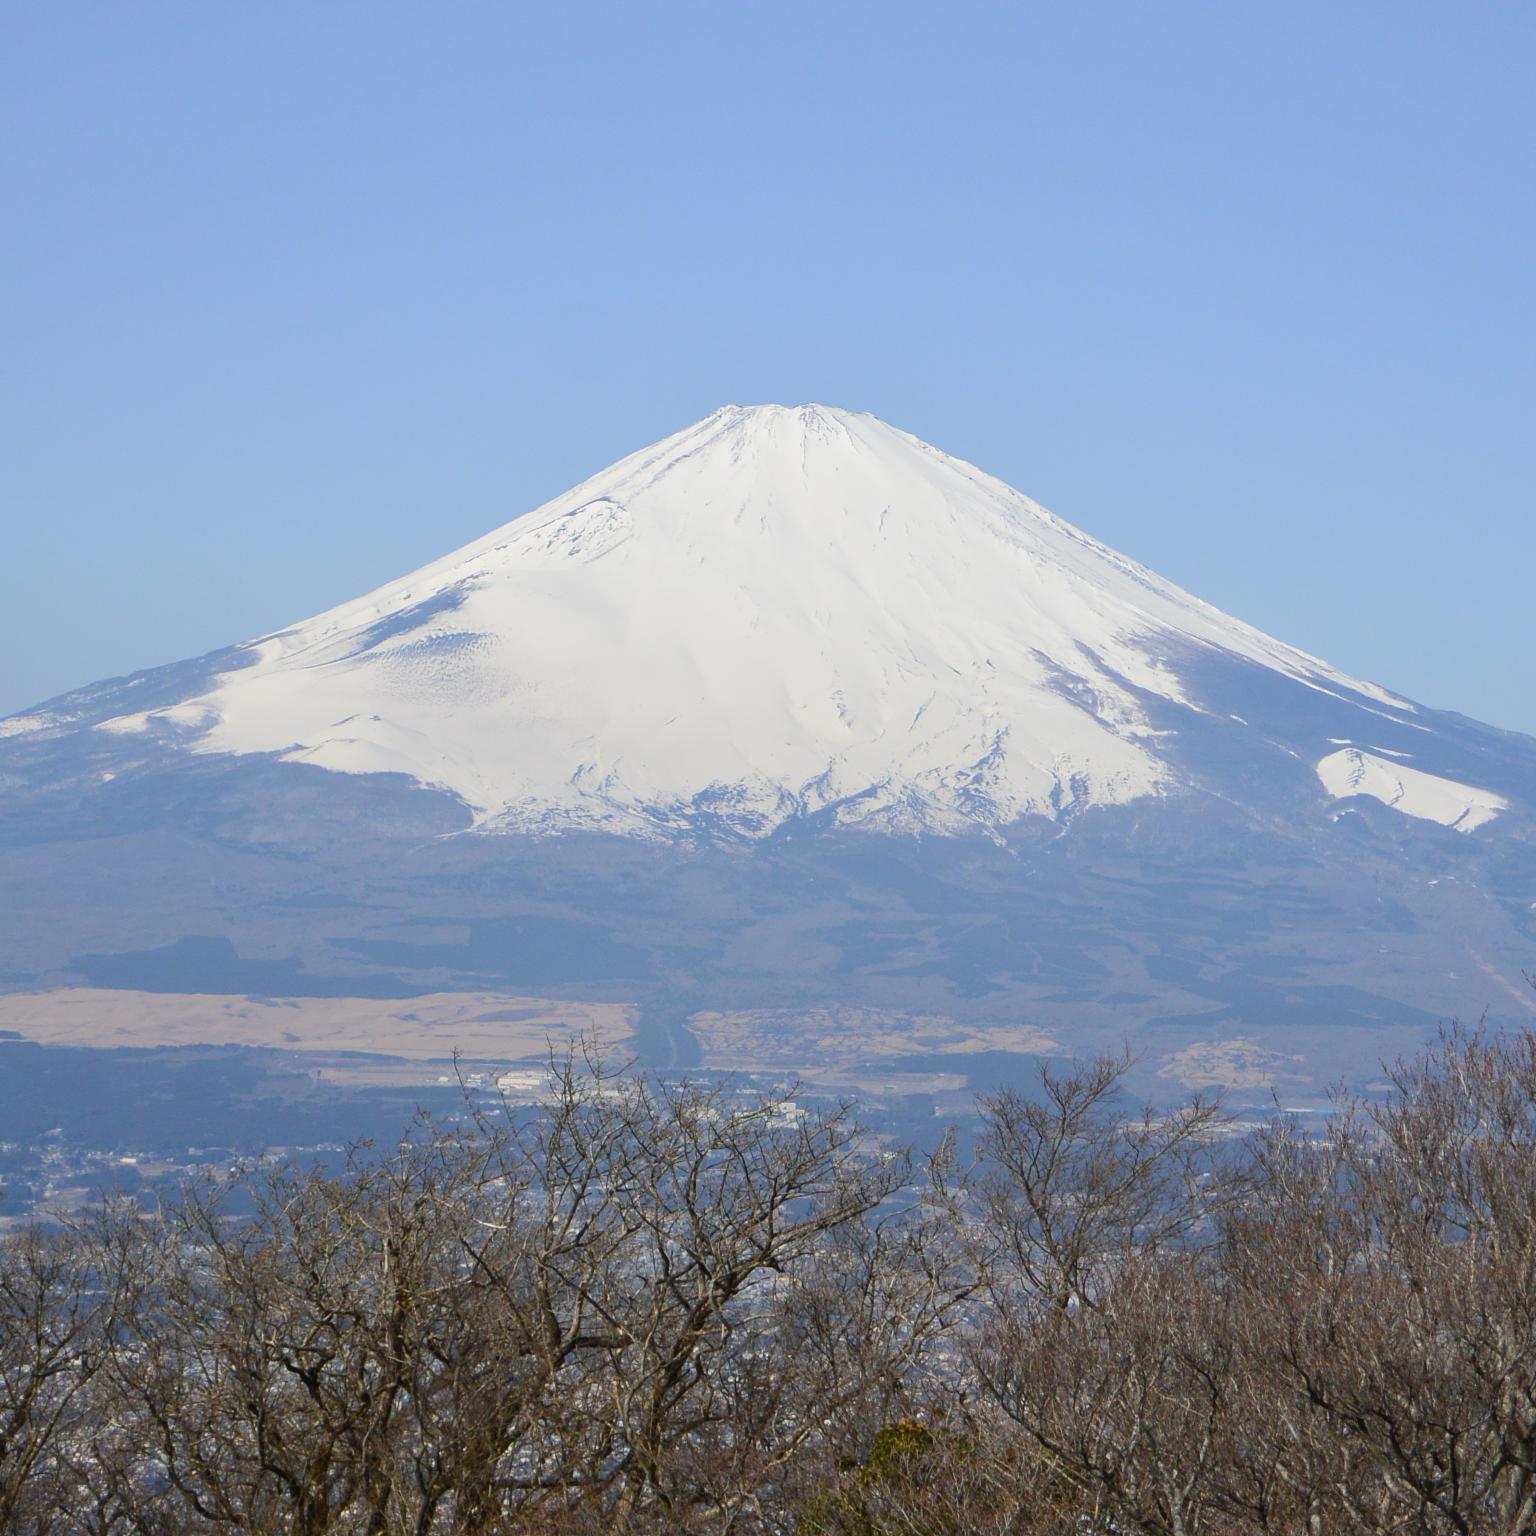 ライノ&バードとか銀座グラビティとかにいるひと。外岩は御岳とか城ヶ崎とか湯河原とか笠間とか。